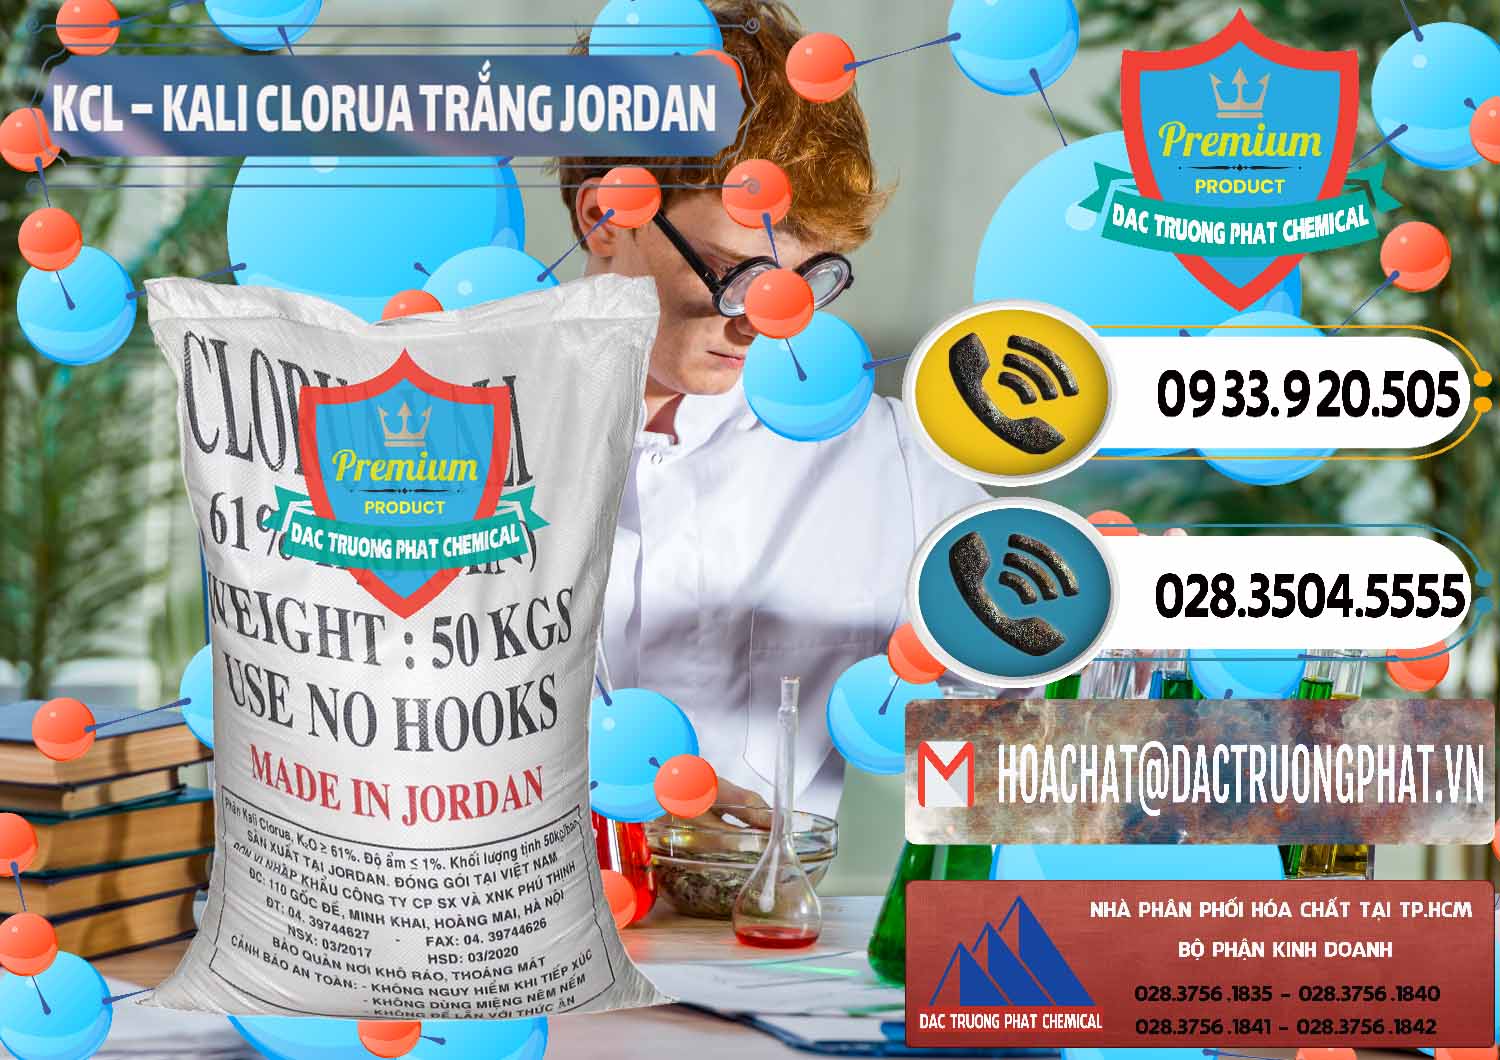 Nơi bán KCL – Kali Clorua Trắng Jordan - 0088 - Phân phối và cung cấp hóa chất tại TP.HCM - hoachatdetnhuom.vn